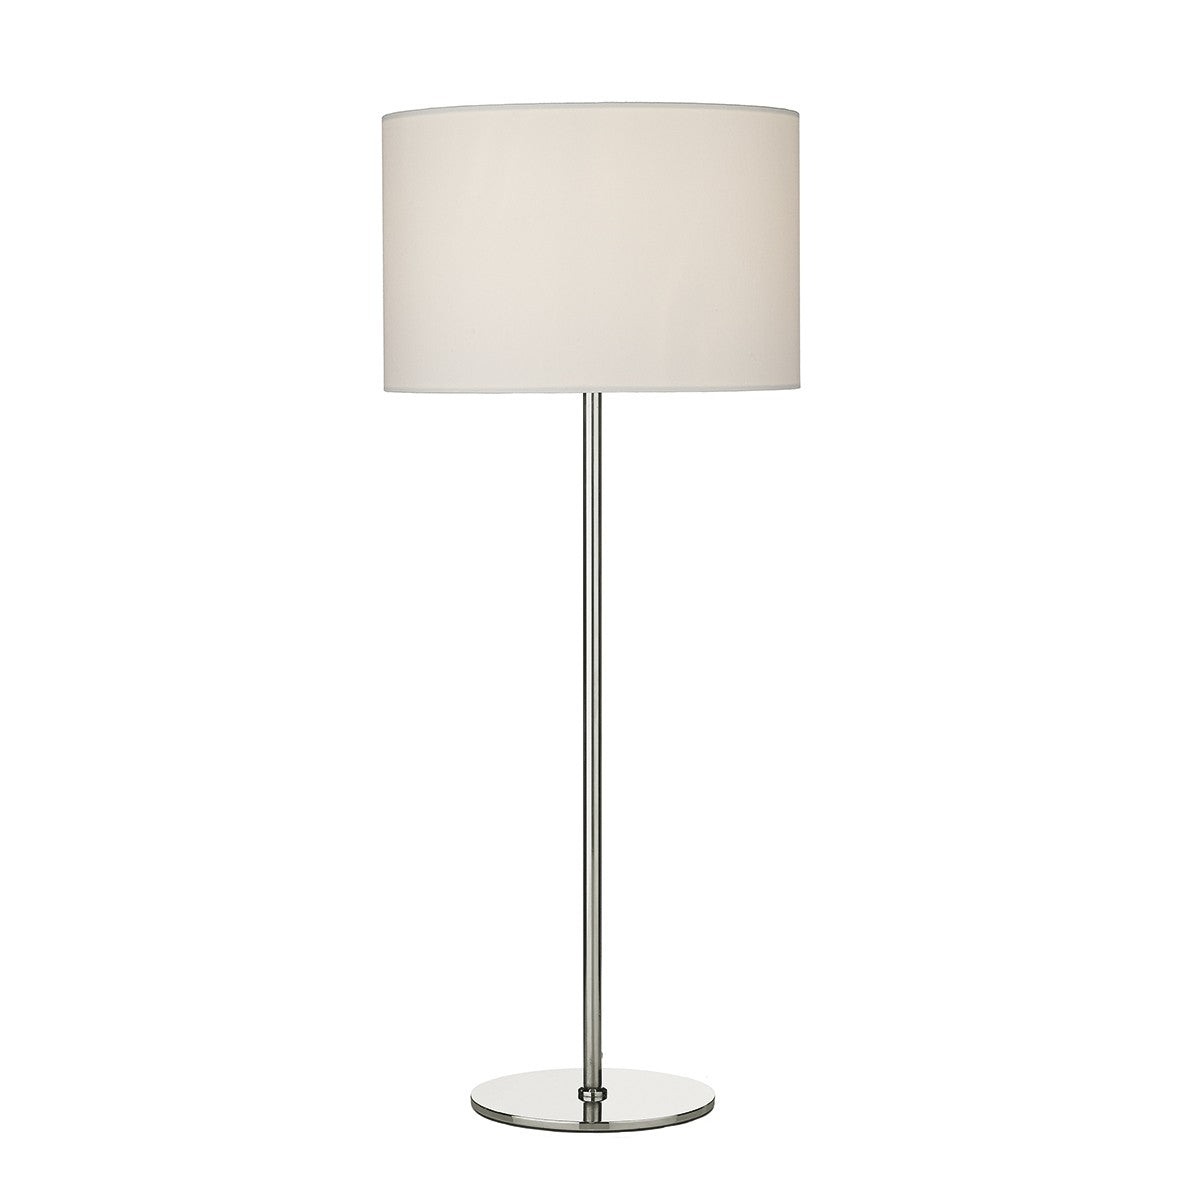 Rimini Table Lamp base only RIM4246 - The Light Company